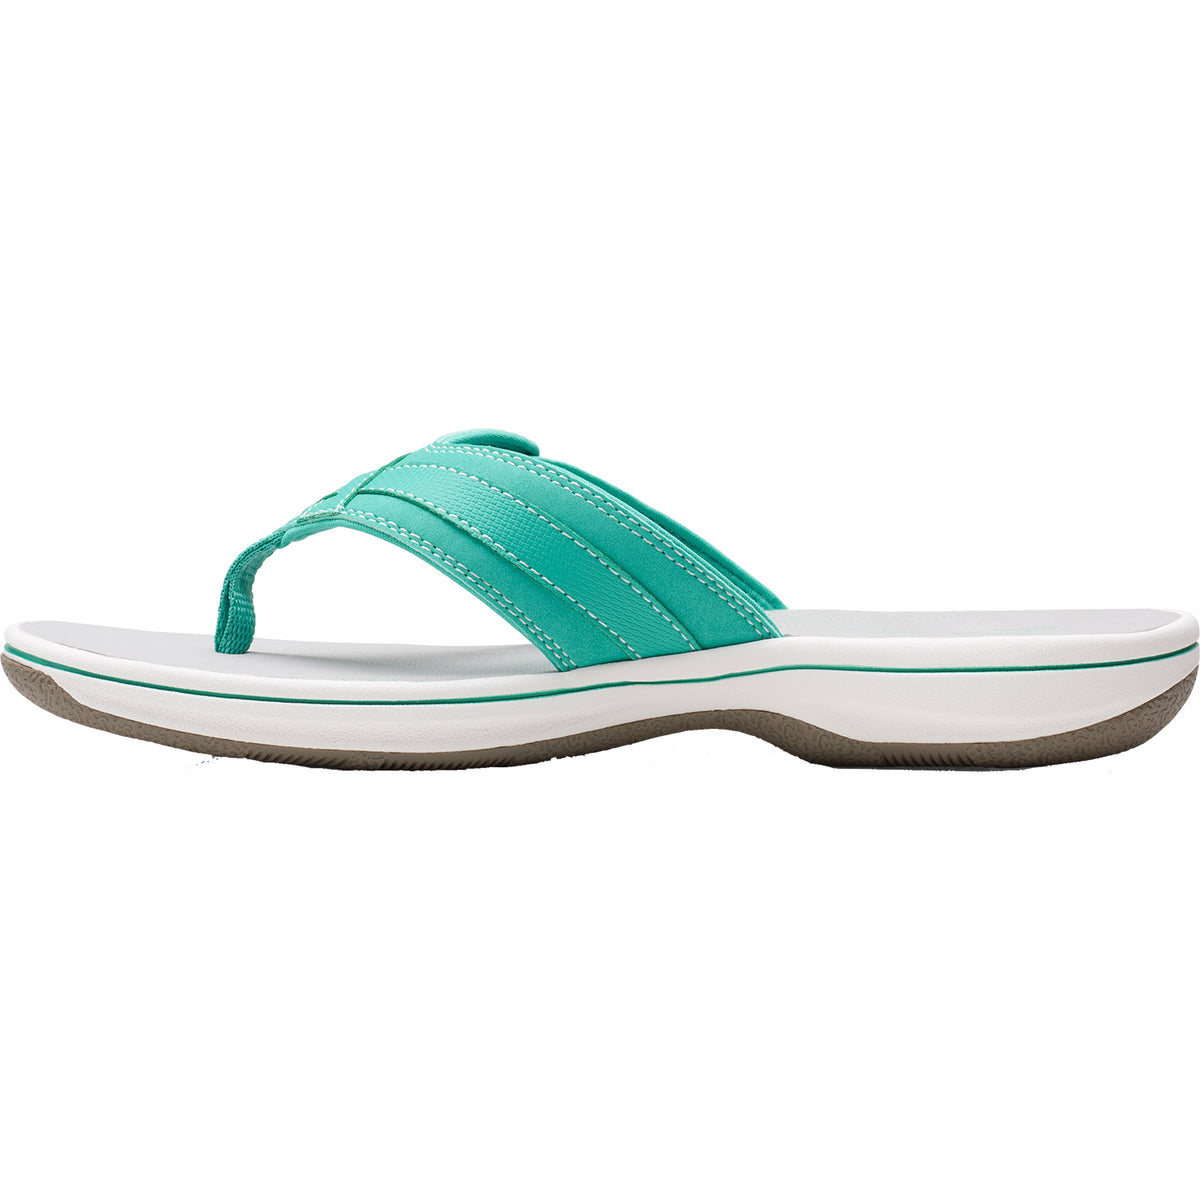 Clarks Breeze Sea Green | Women's Flip Flops | Footwear etc.